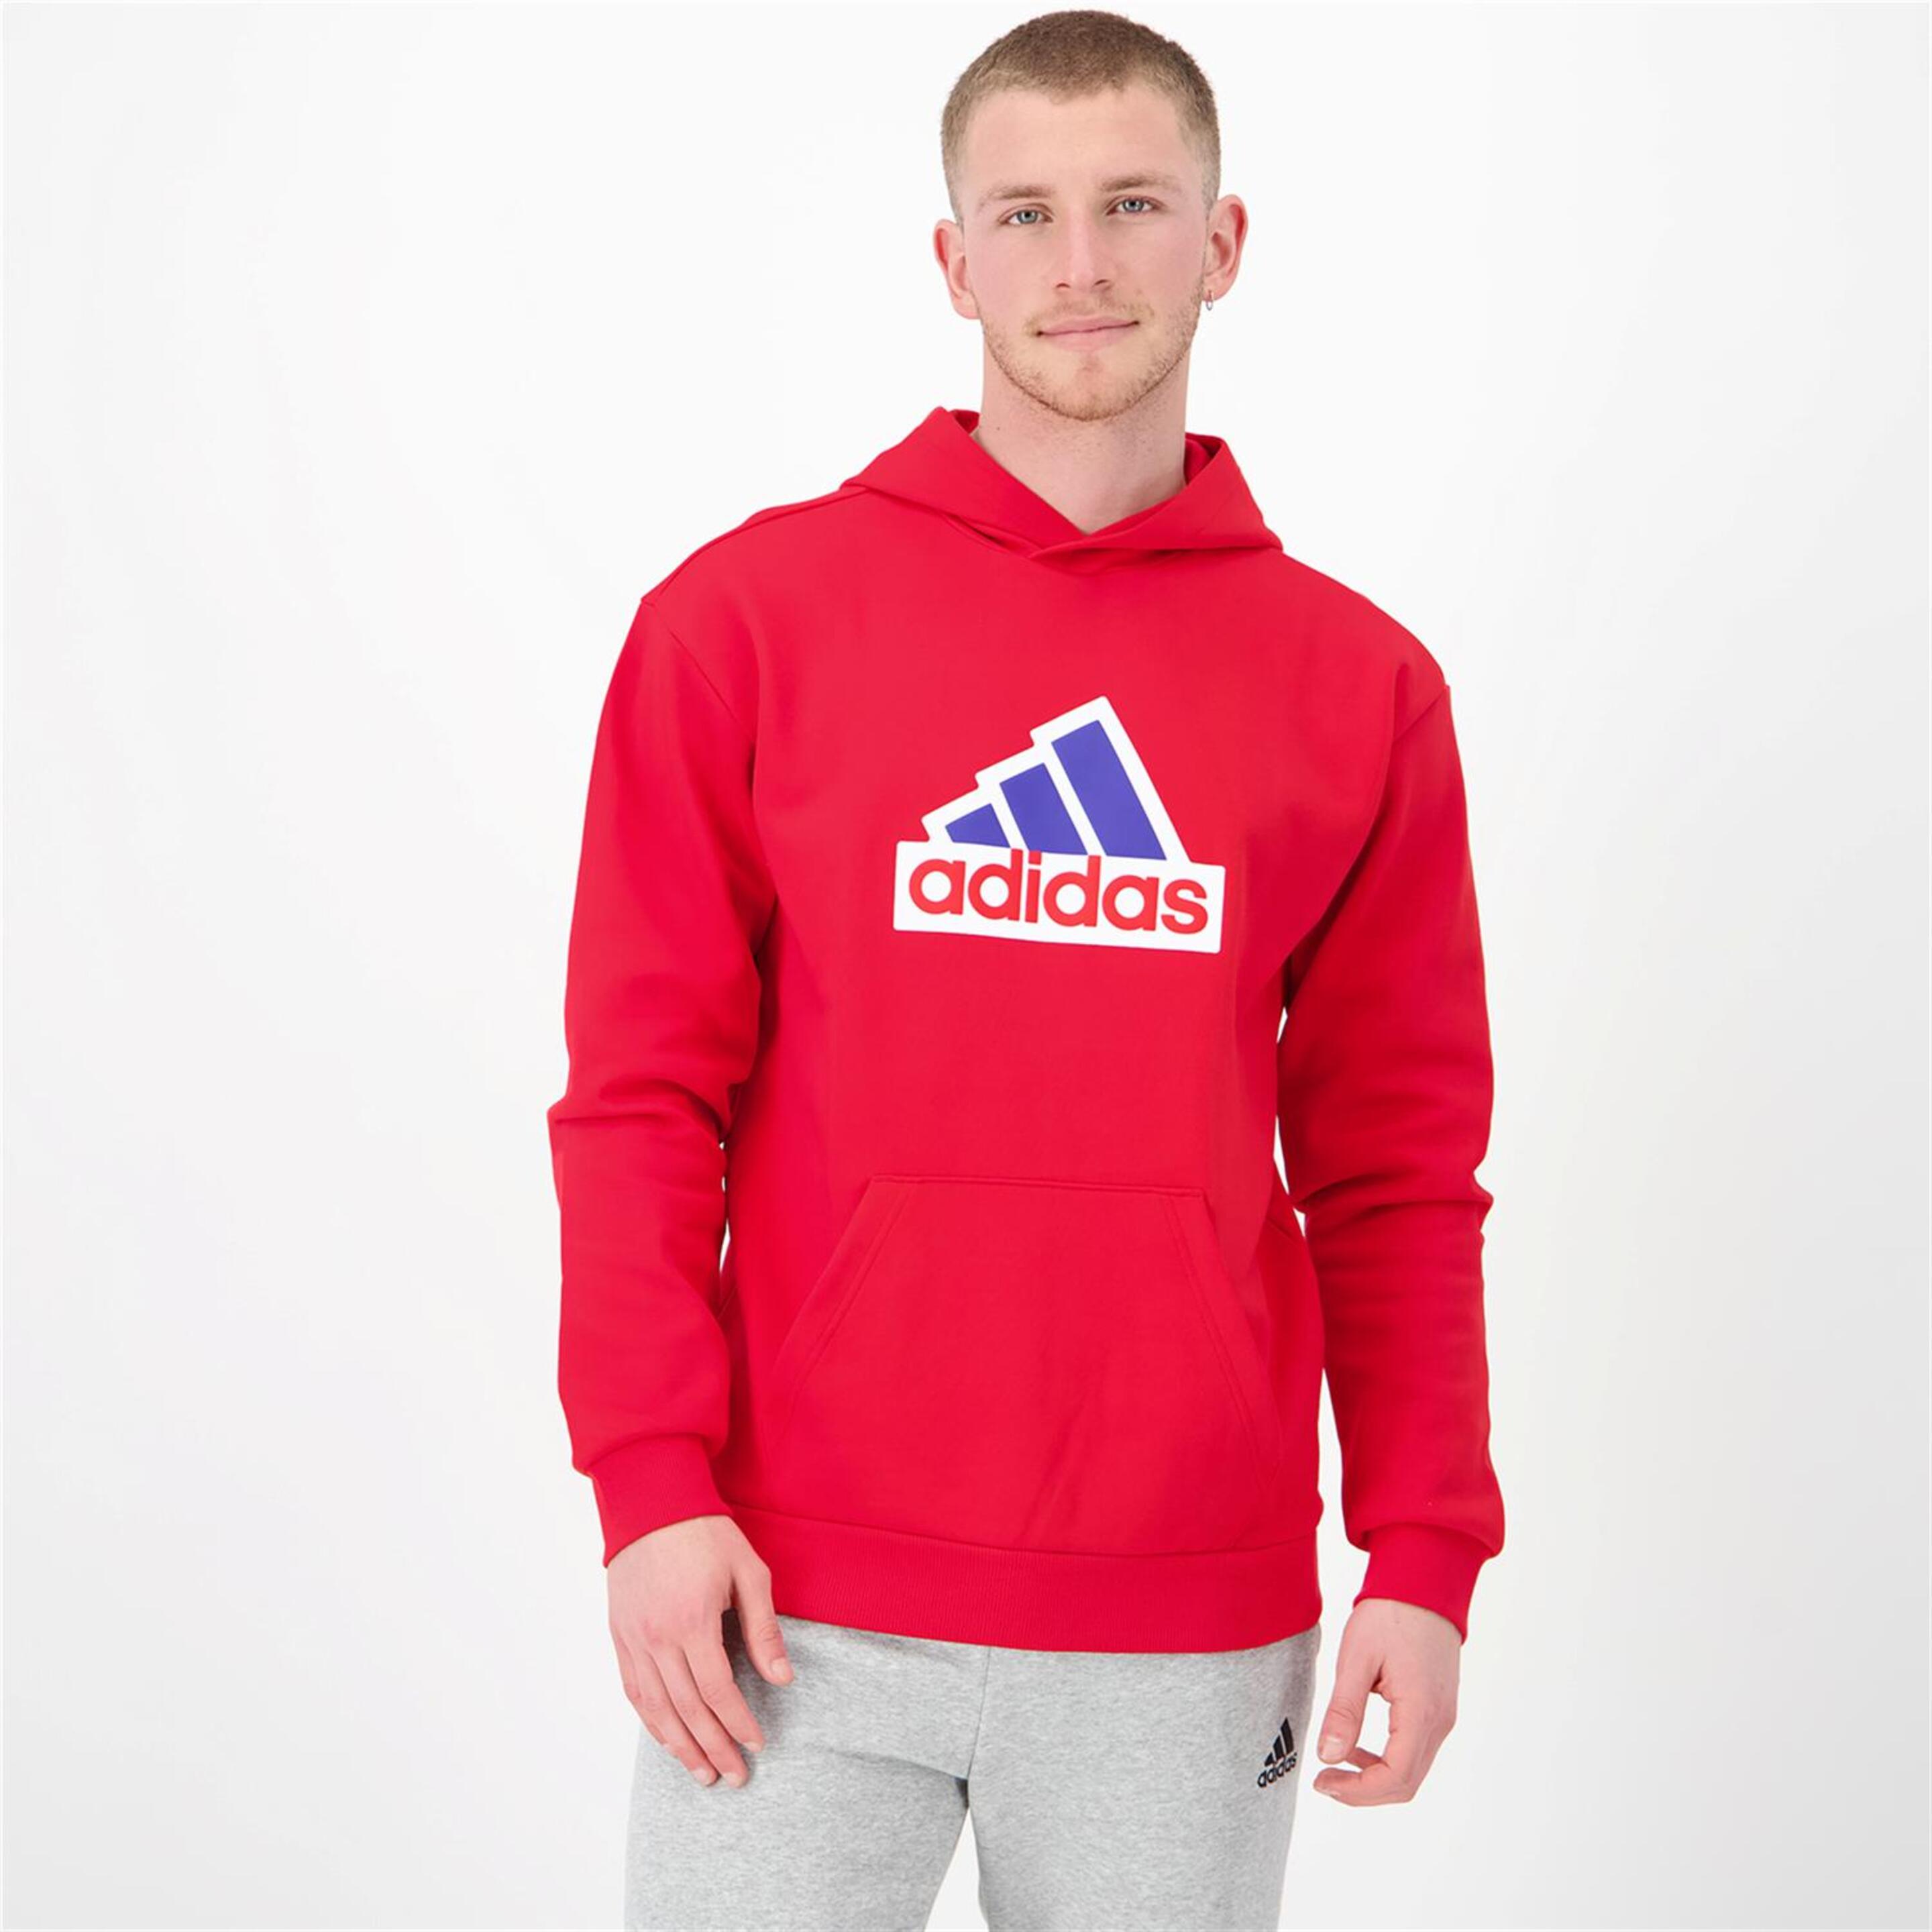 adidas Oly - rojo - Sweatshirt Capuz Homem